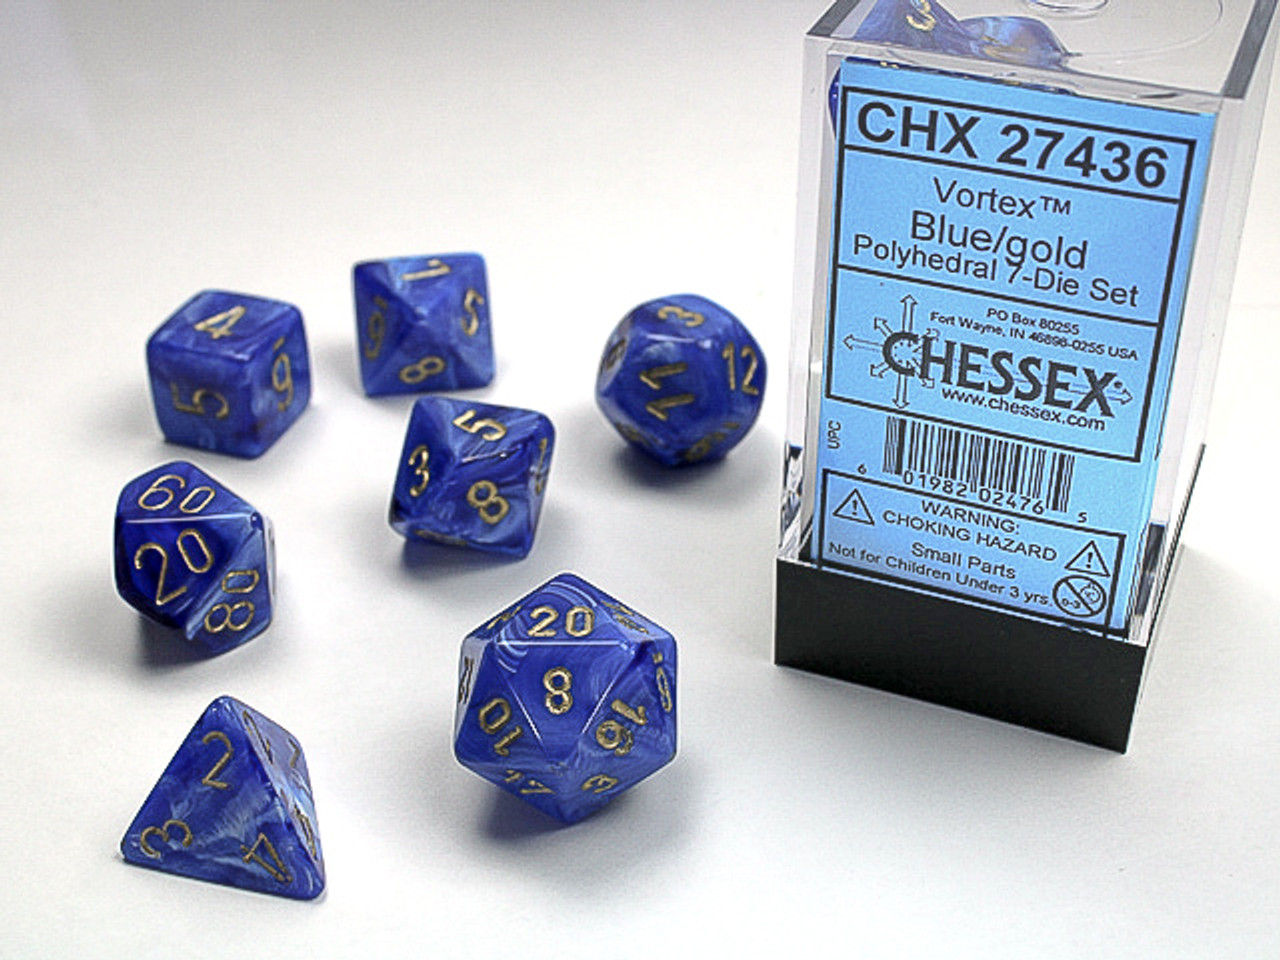 27436 - Vortex® Polyhedral Blue/gold 7-Die Set